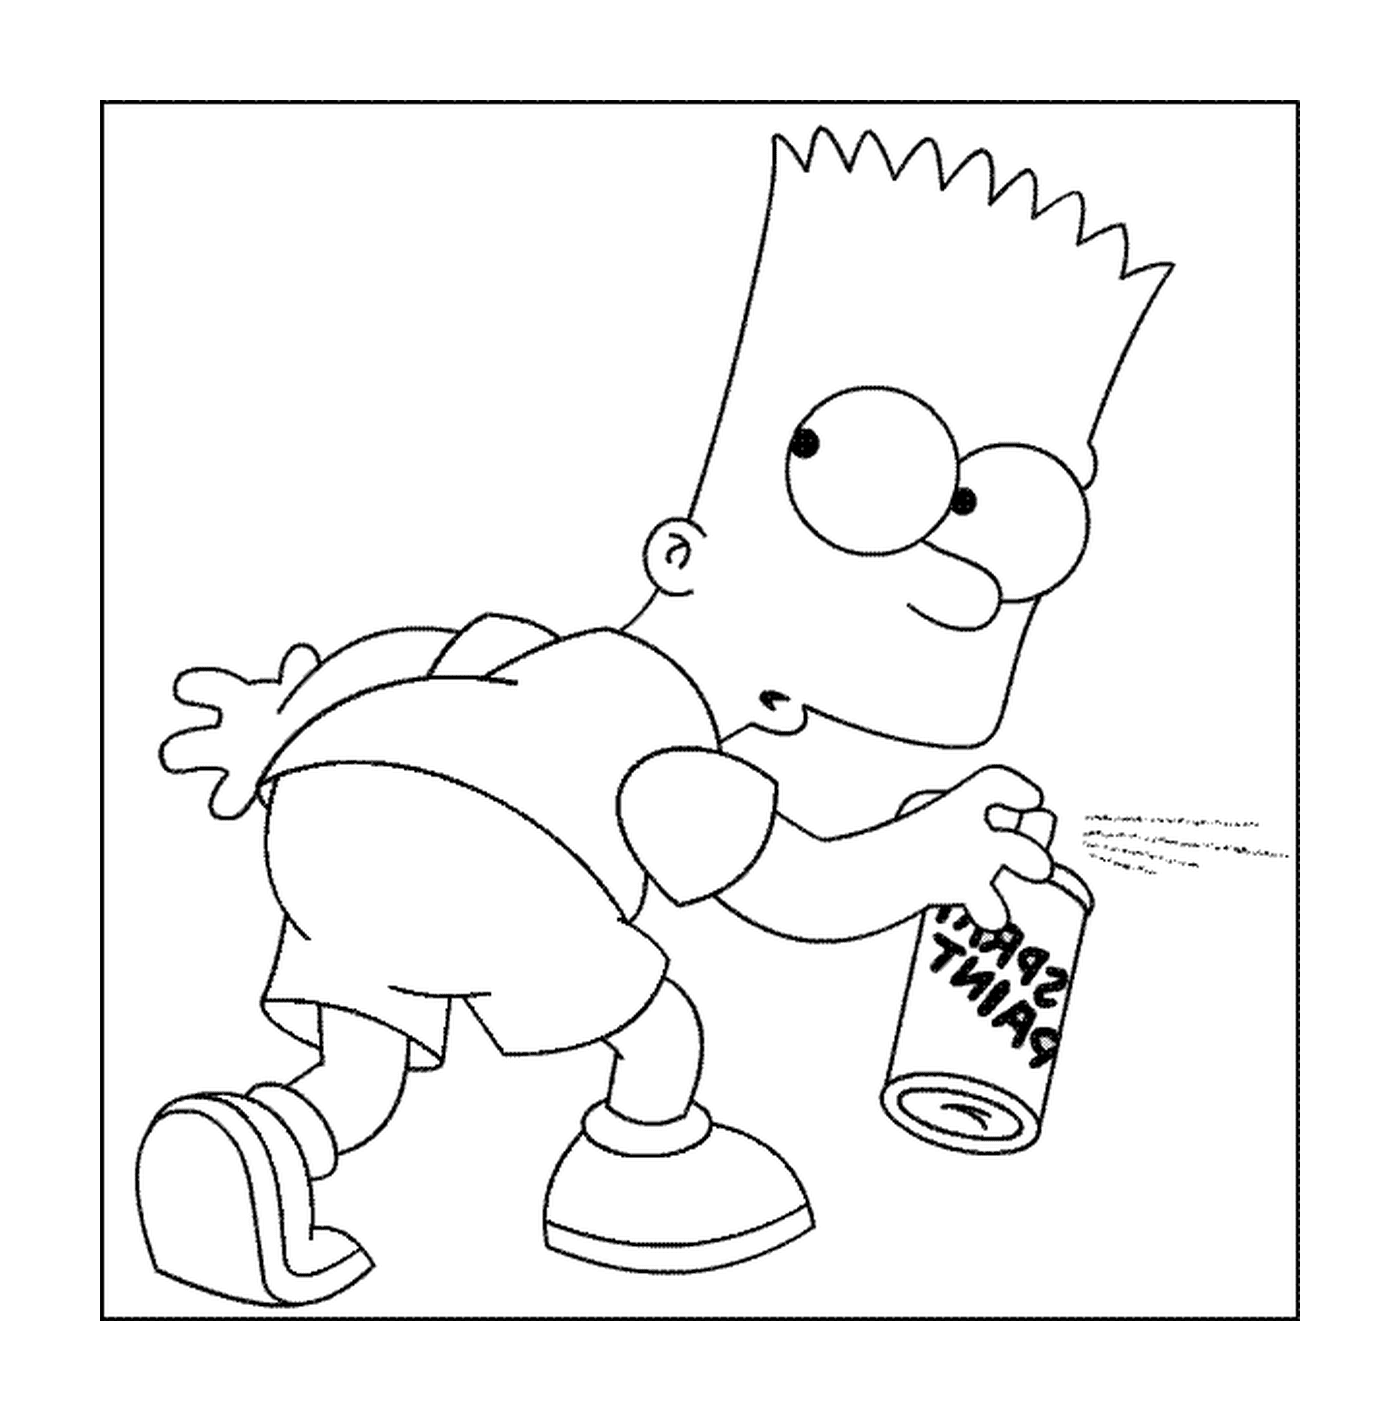  Bart makes a tag 